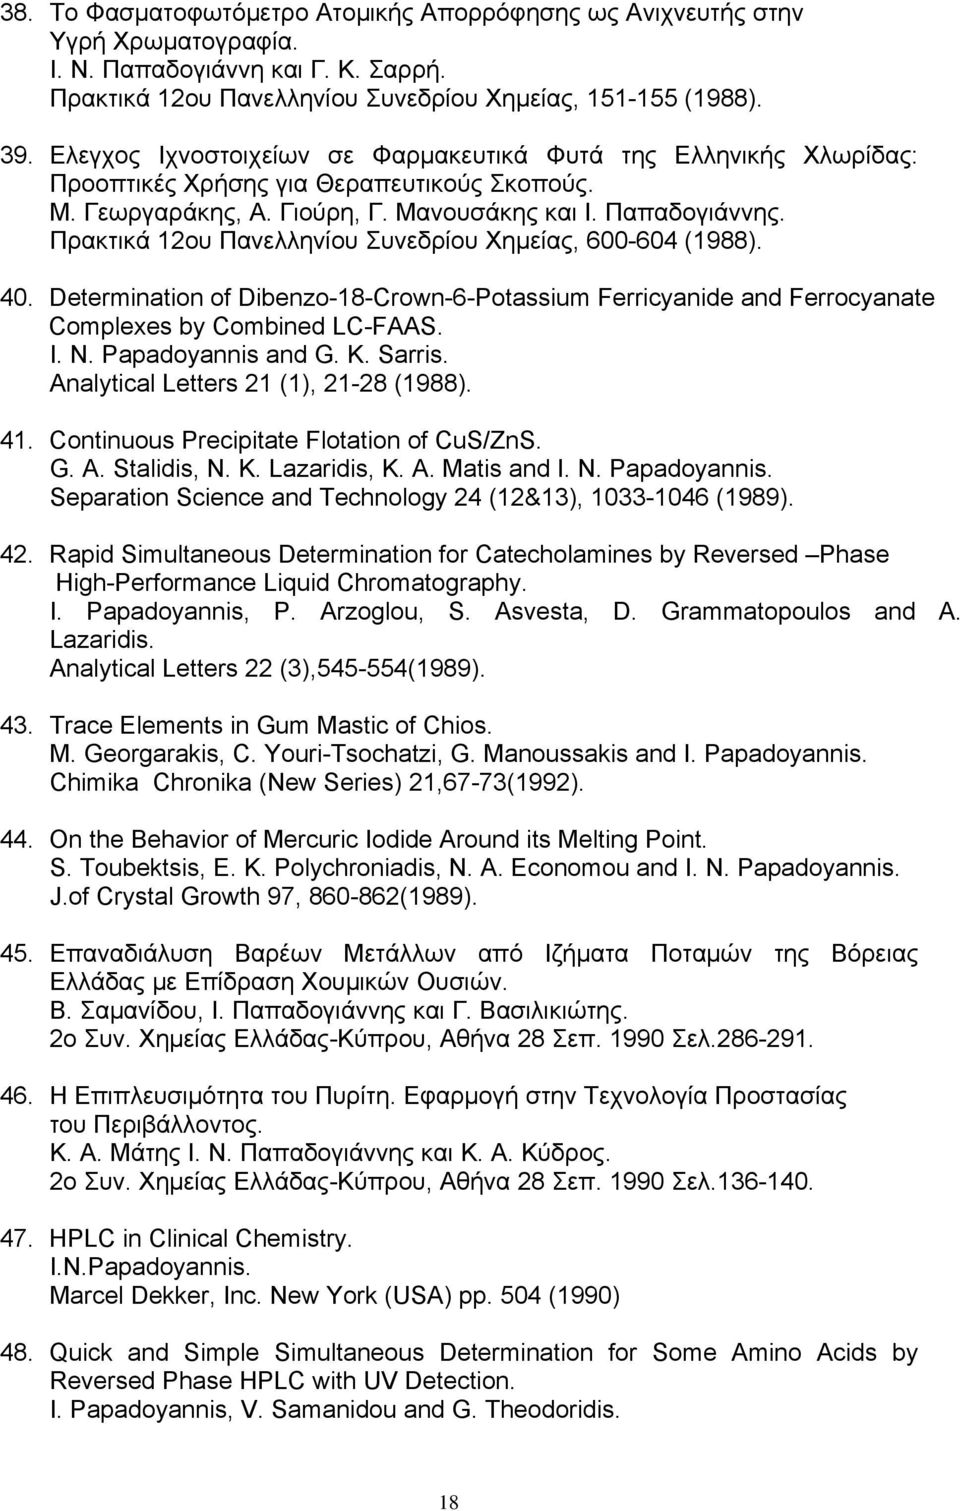 Πρακτικά 12ου Πανελληνίου Συνεδρίου Χημείας, 600-604 (1988). 40. Determination of Dibenzo-18-Crown-6-Potassium Ferricyanide and Ferrocyanate Complexes by Combined LC-FAAS. I. N. Papadoyannis and G. K.